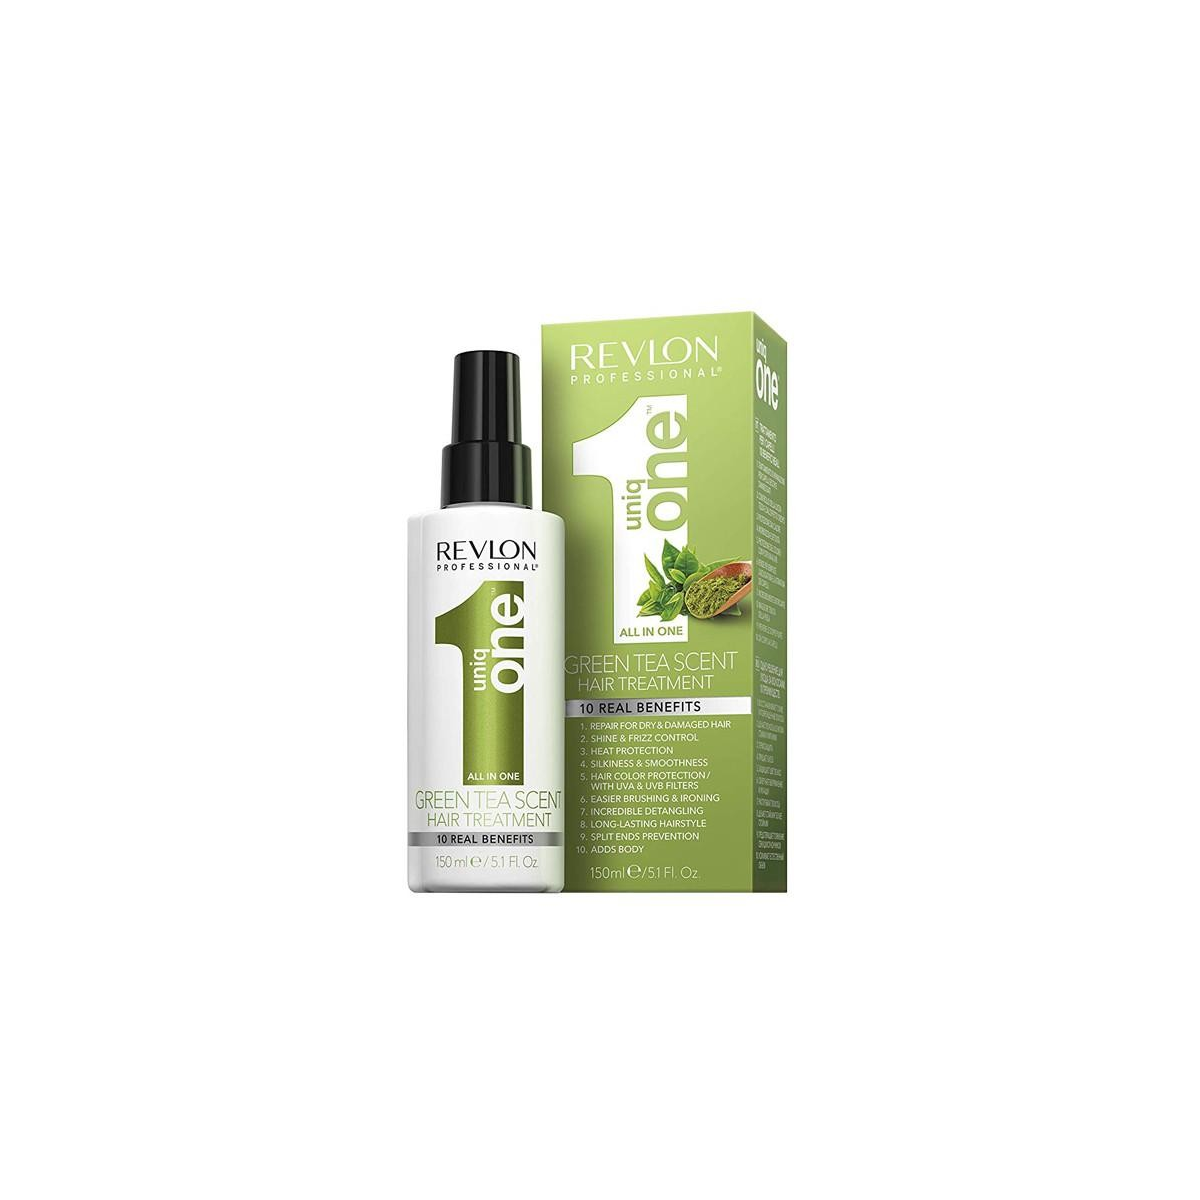 REVLON PROFESSIONAL - GREEN TEA SCENT (150ml) Trattamento per capelli al Tè Verde con 10 benefici